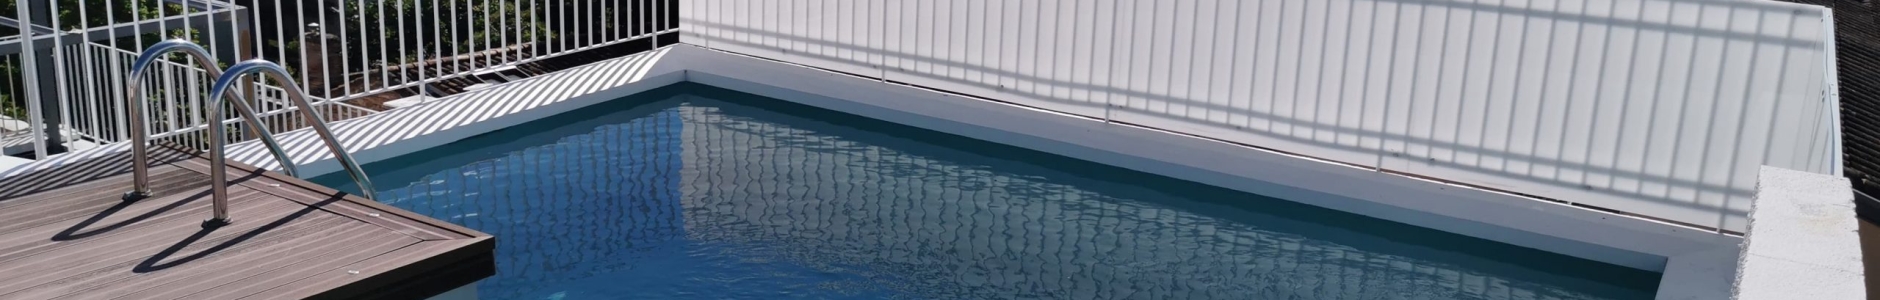 Rénovation local technique piscine Toulouse - Moreno Piscine et Spa